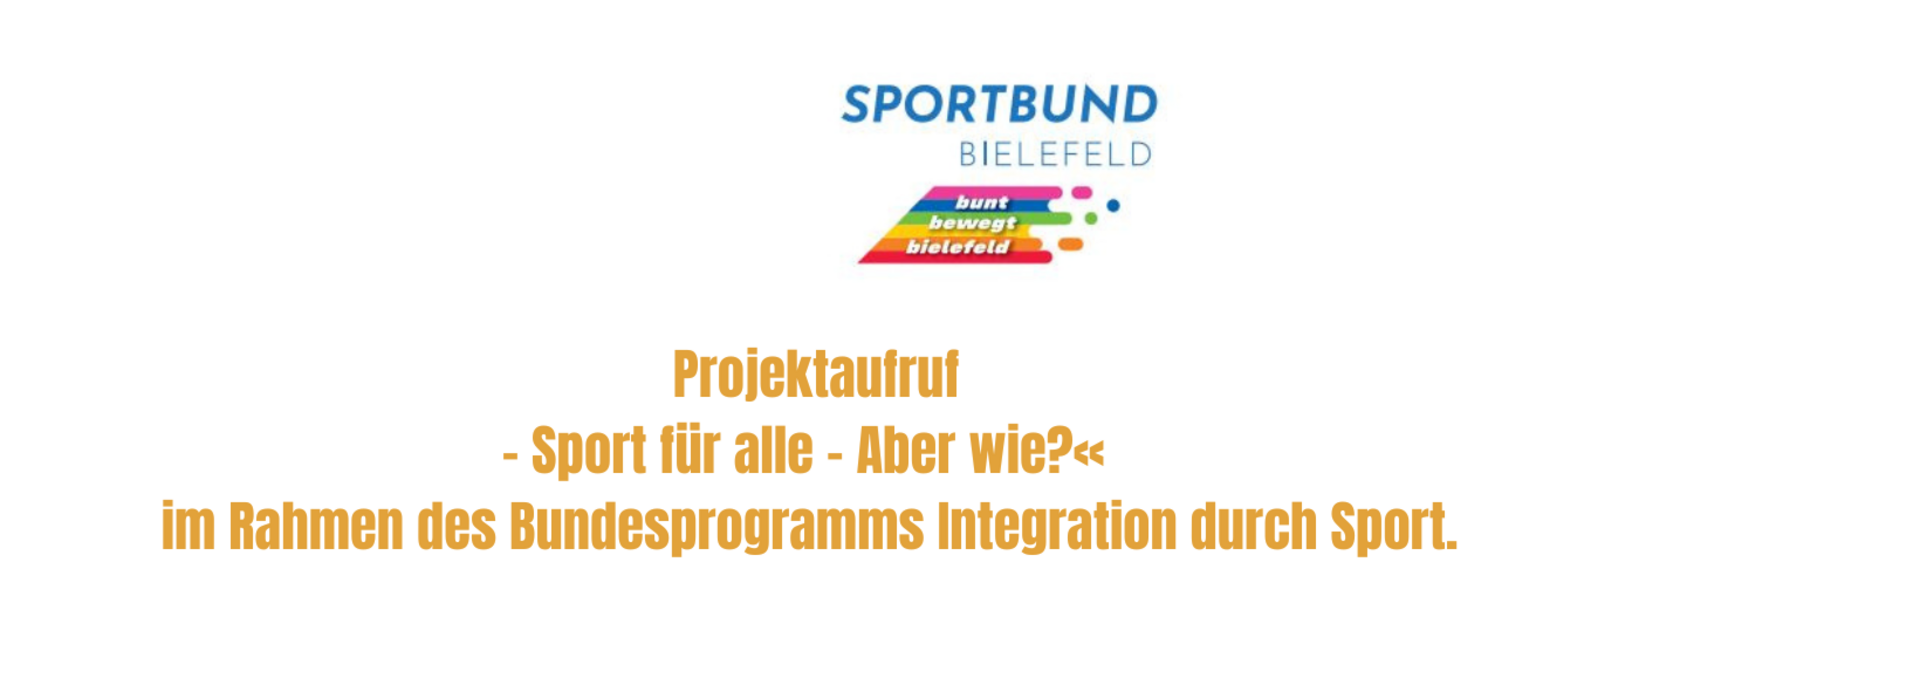 Stadtsportbund Bielefeld e.V.